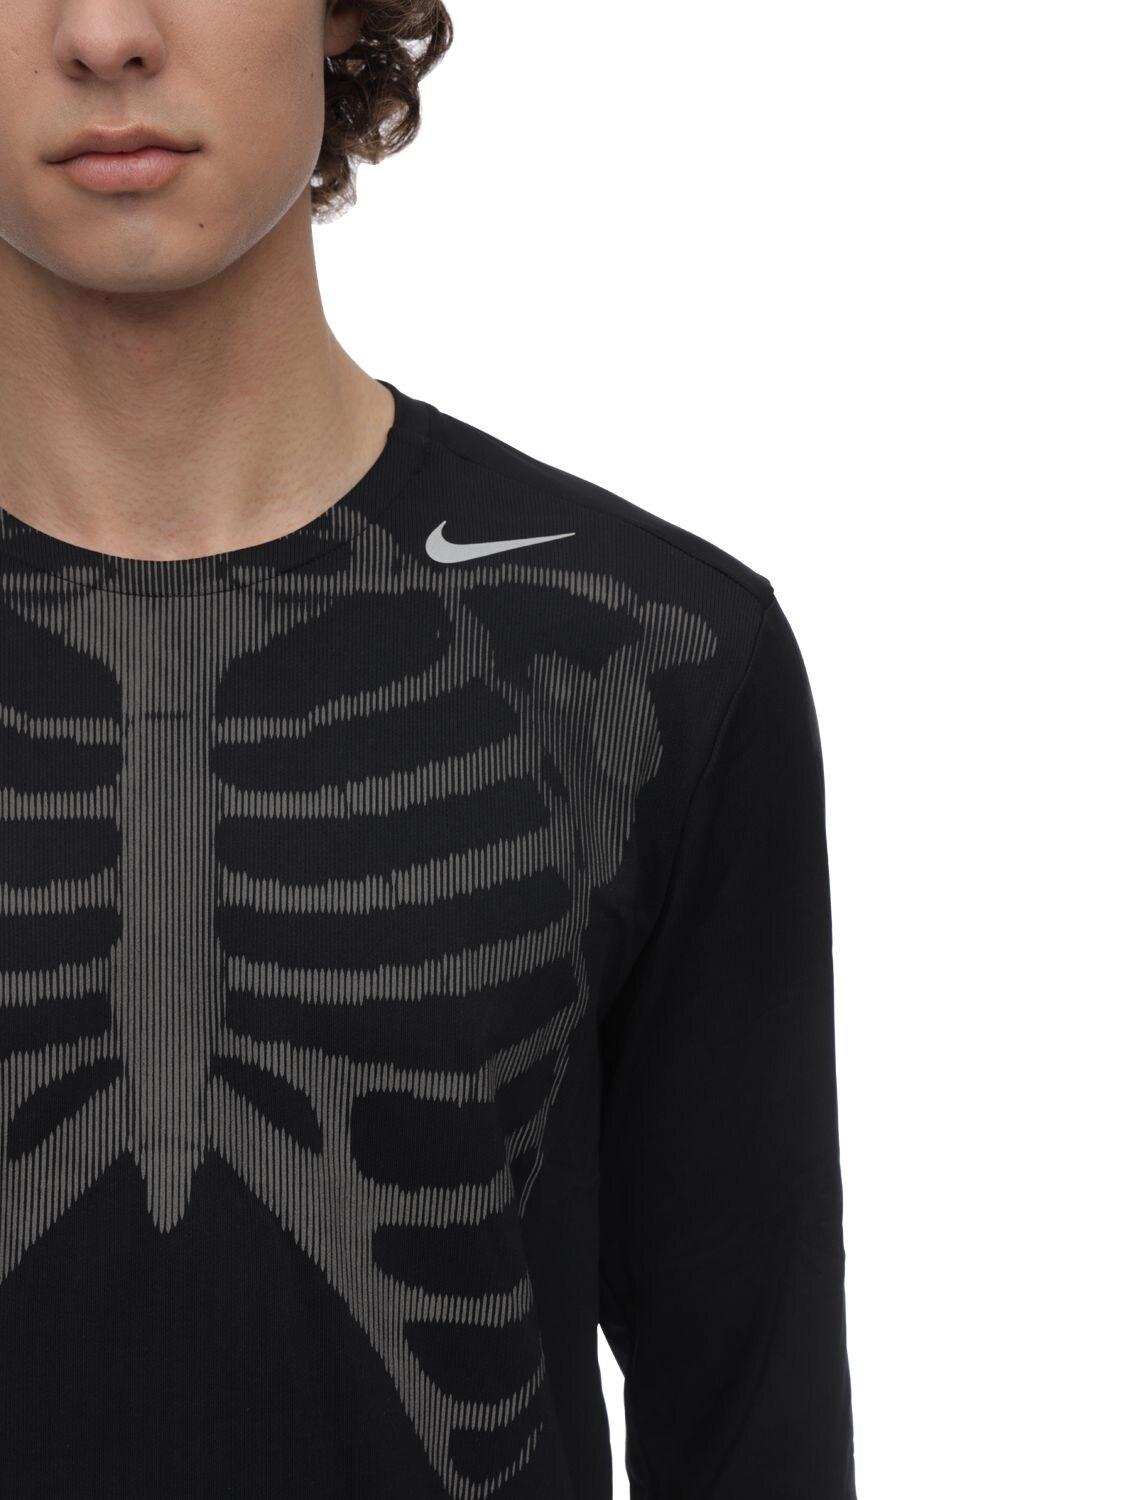 Nike Nrg Skeleton Long Sleeve Top in Black for Men | Lyst